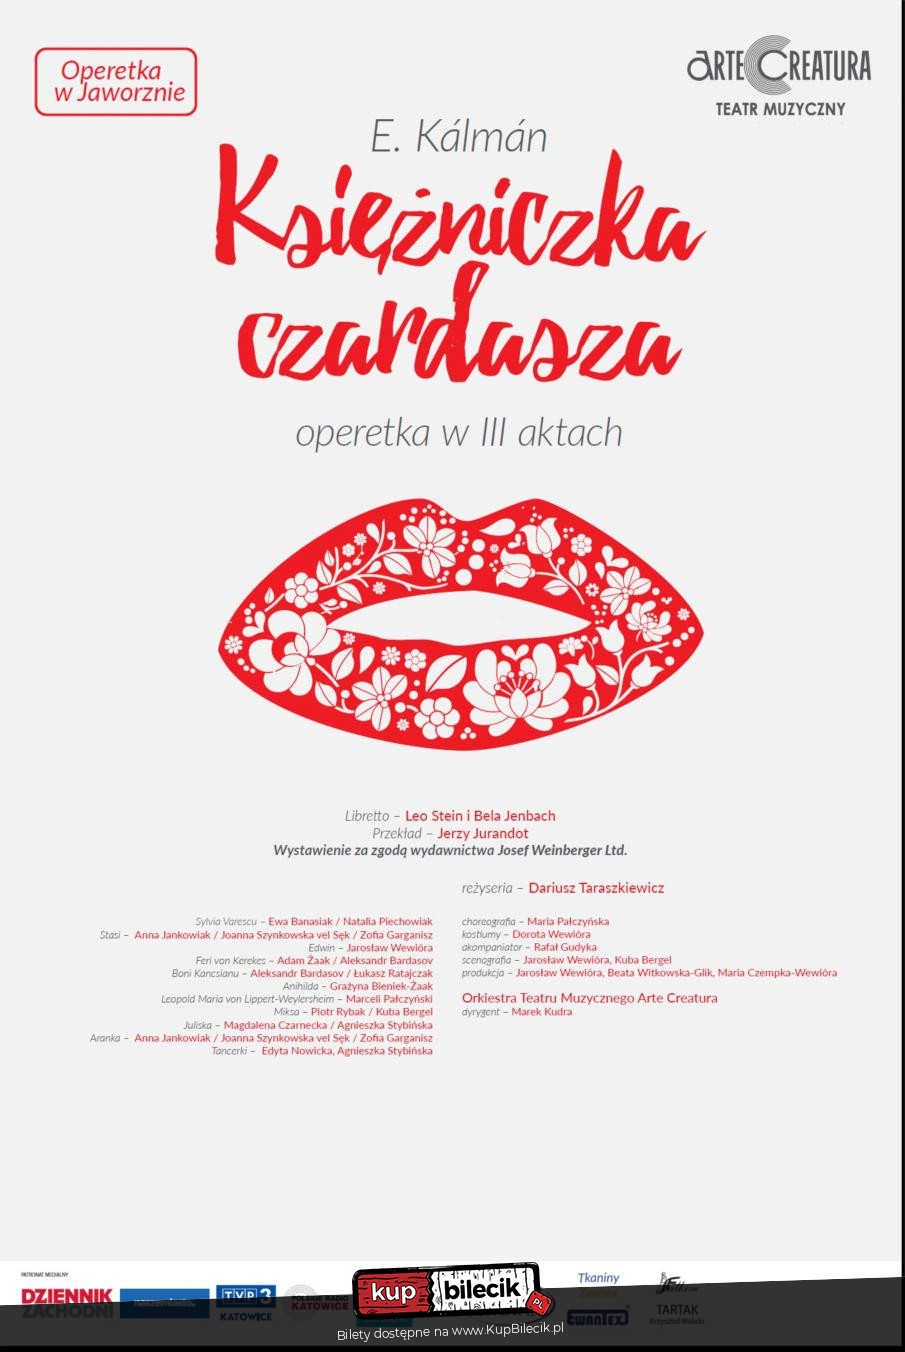 Plakat Księżniczka czardasza I.Kalman operetka - Arte Creatura Teatr Muzyczny 112261